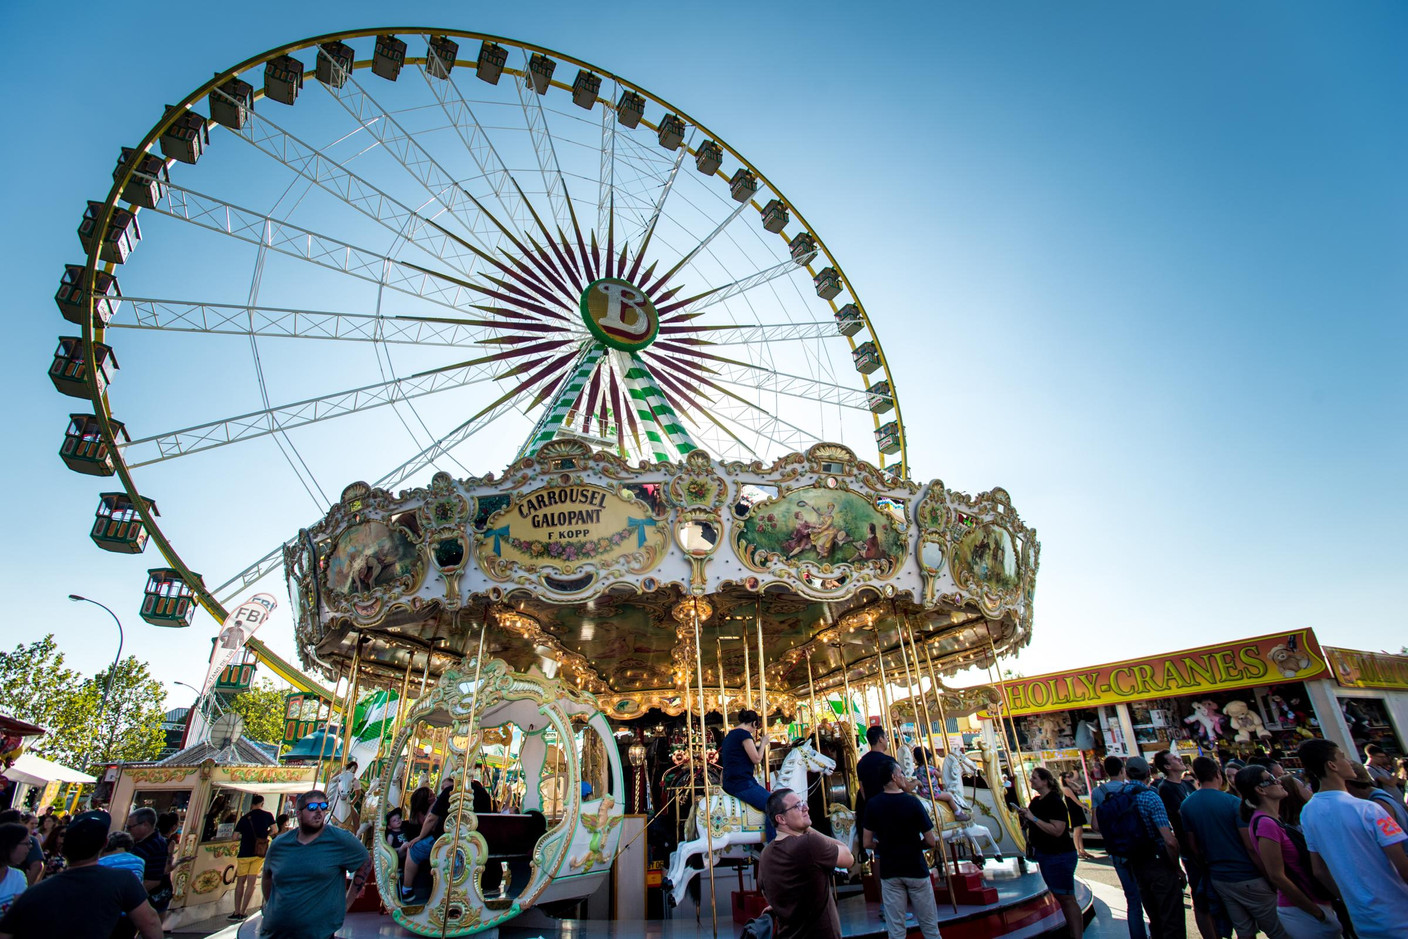 La grande-roue Bellevue et le Carrousel gallopant (Photo: Nader Ghavami)